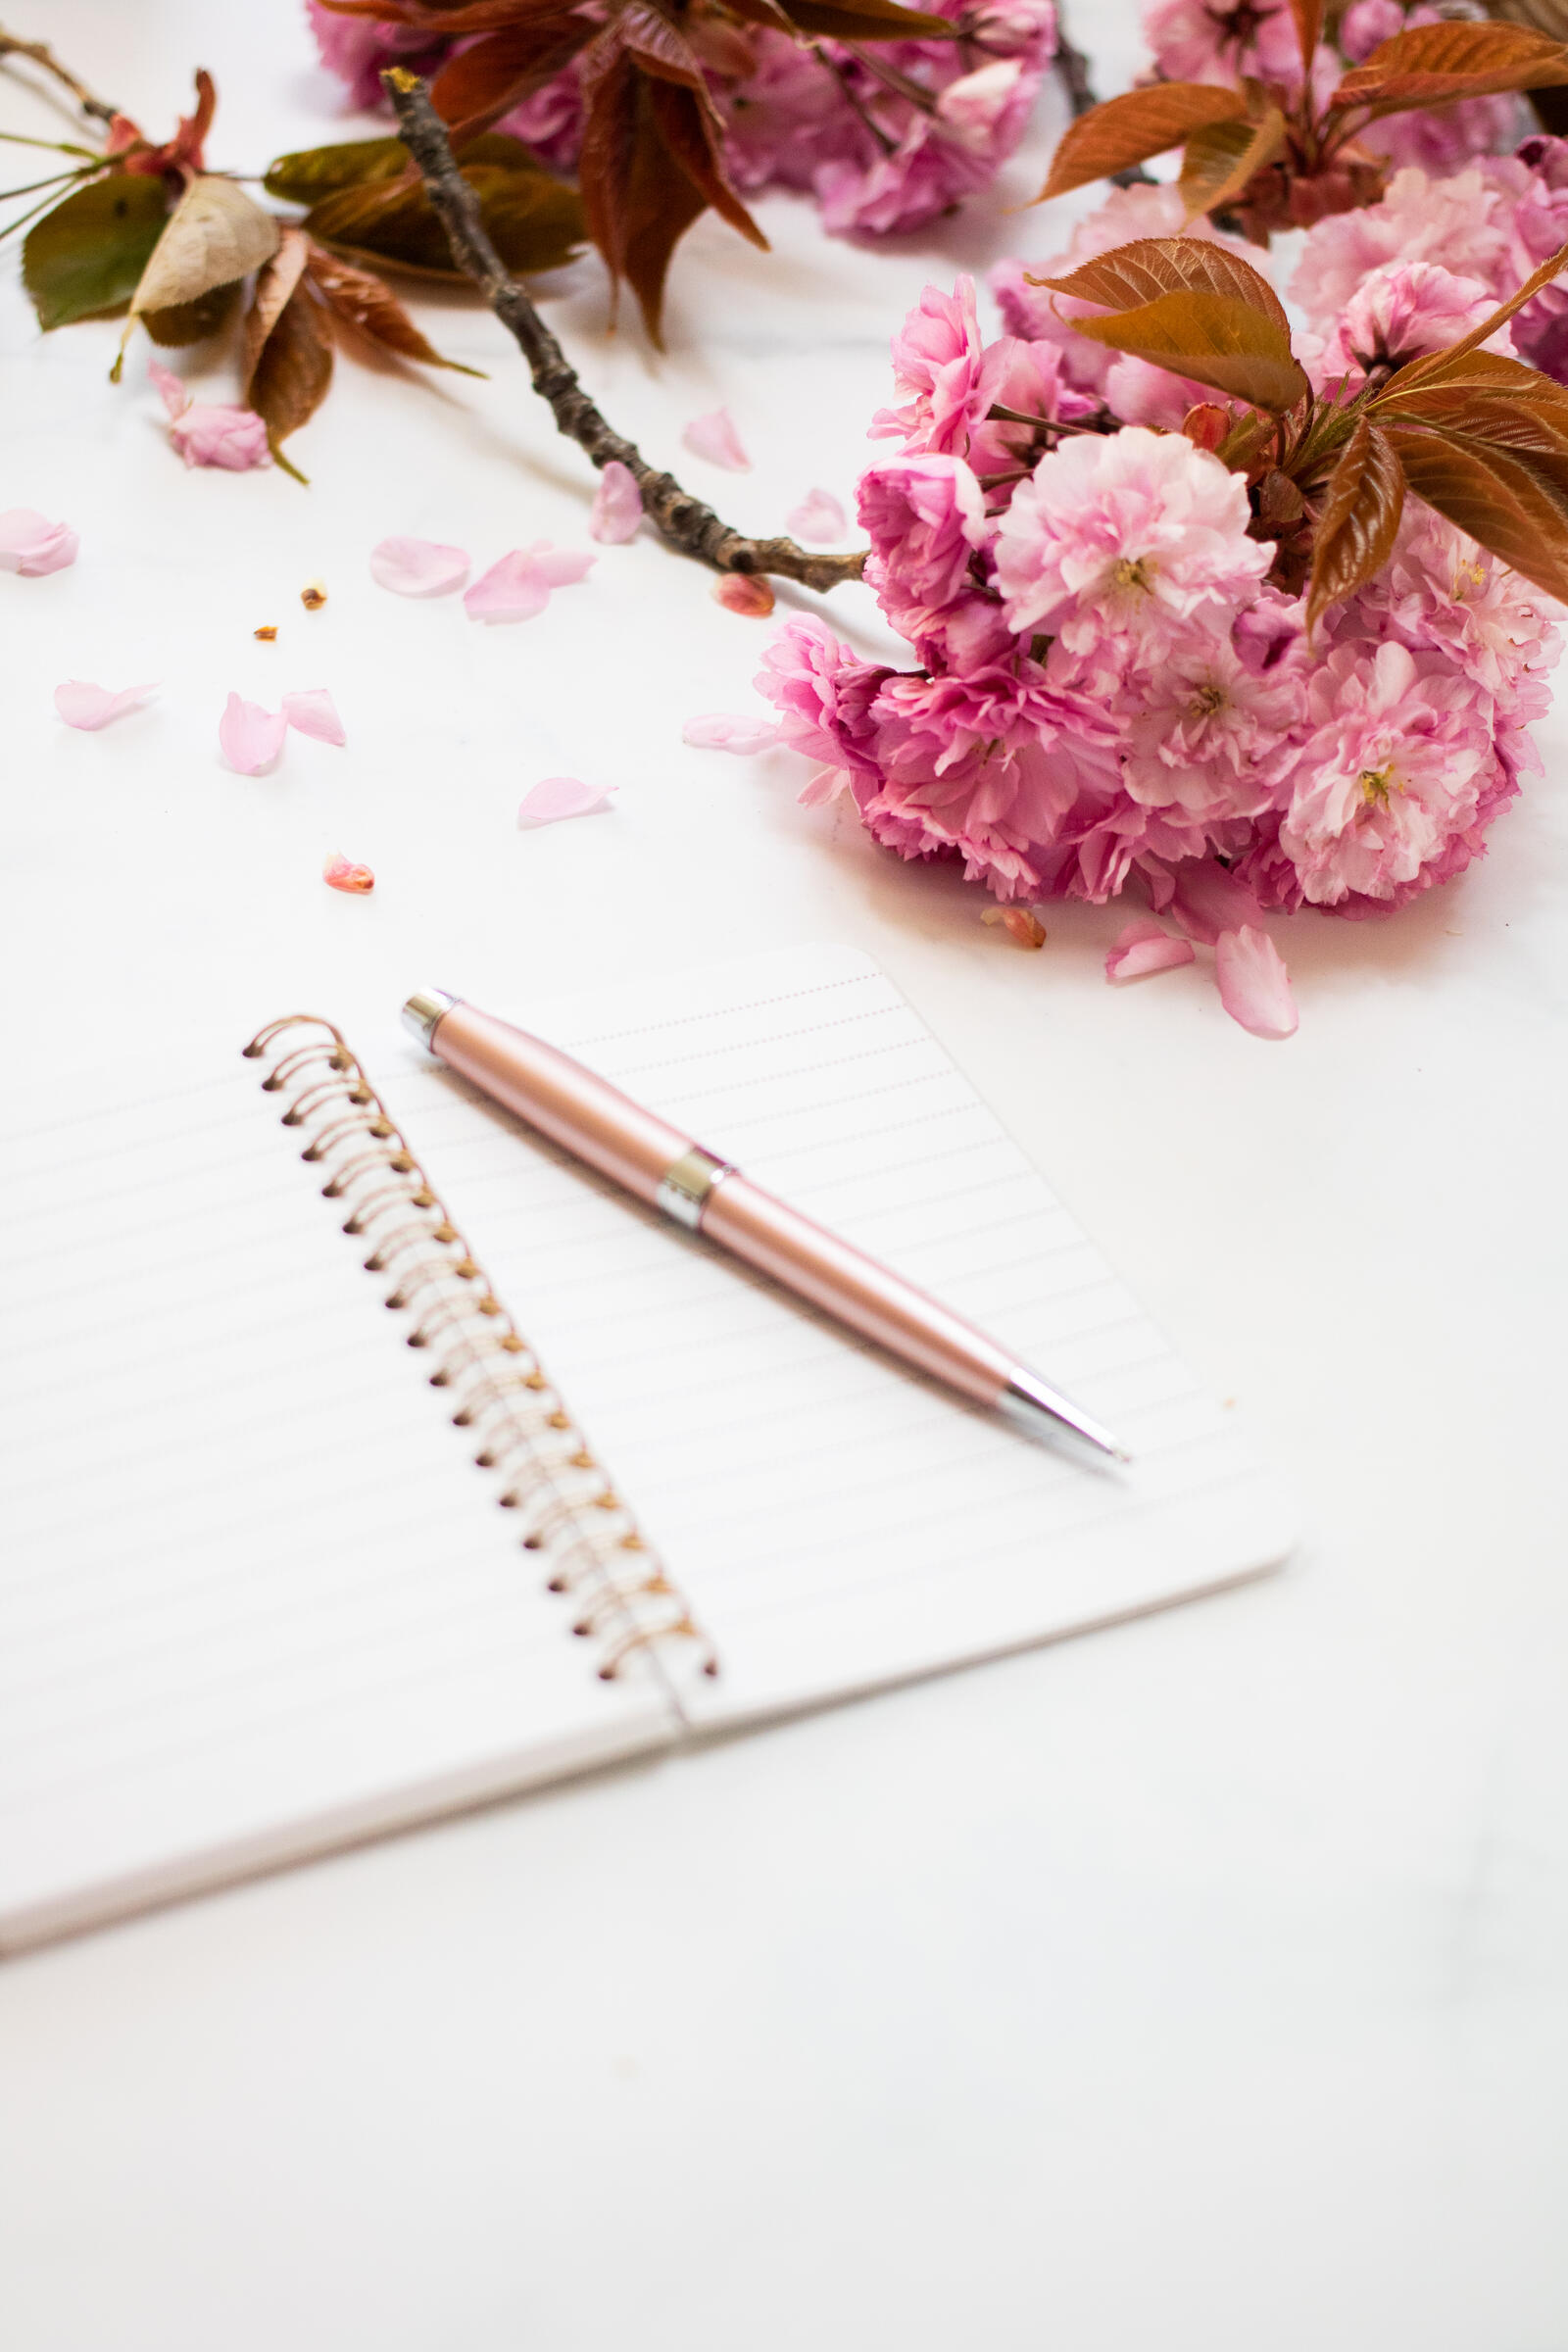 免费照片笔记本旁放着粉红色的花朵